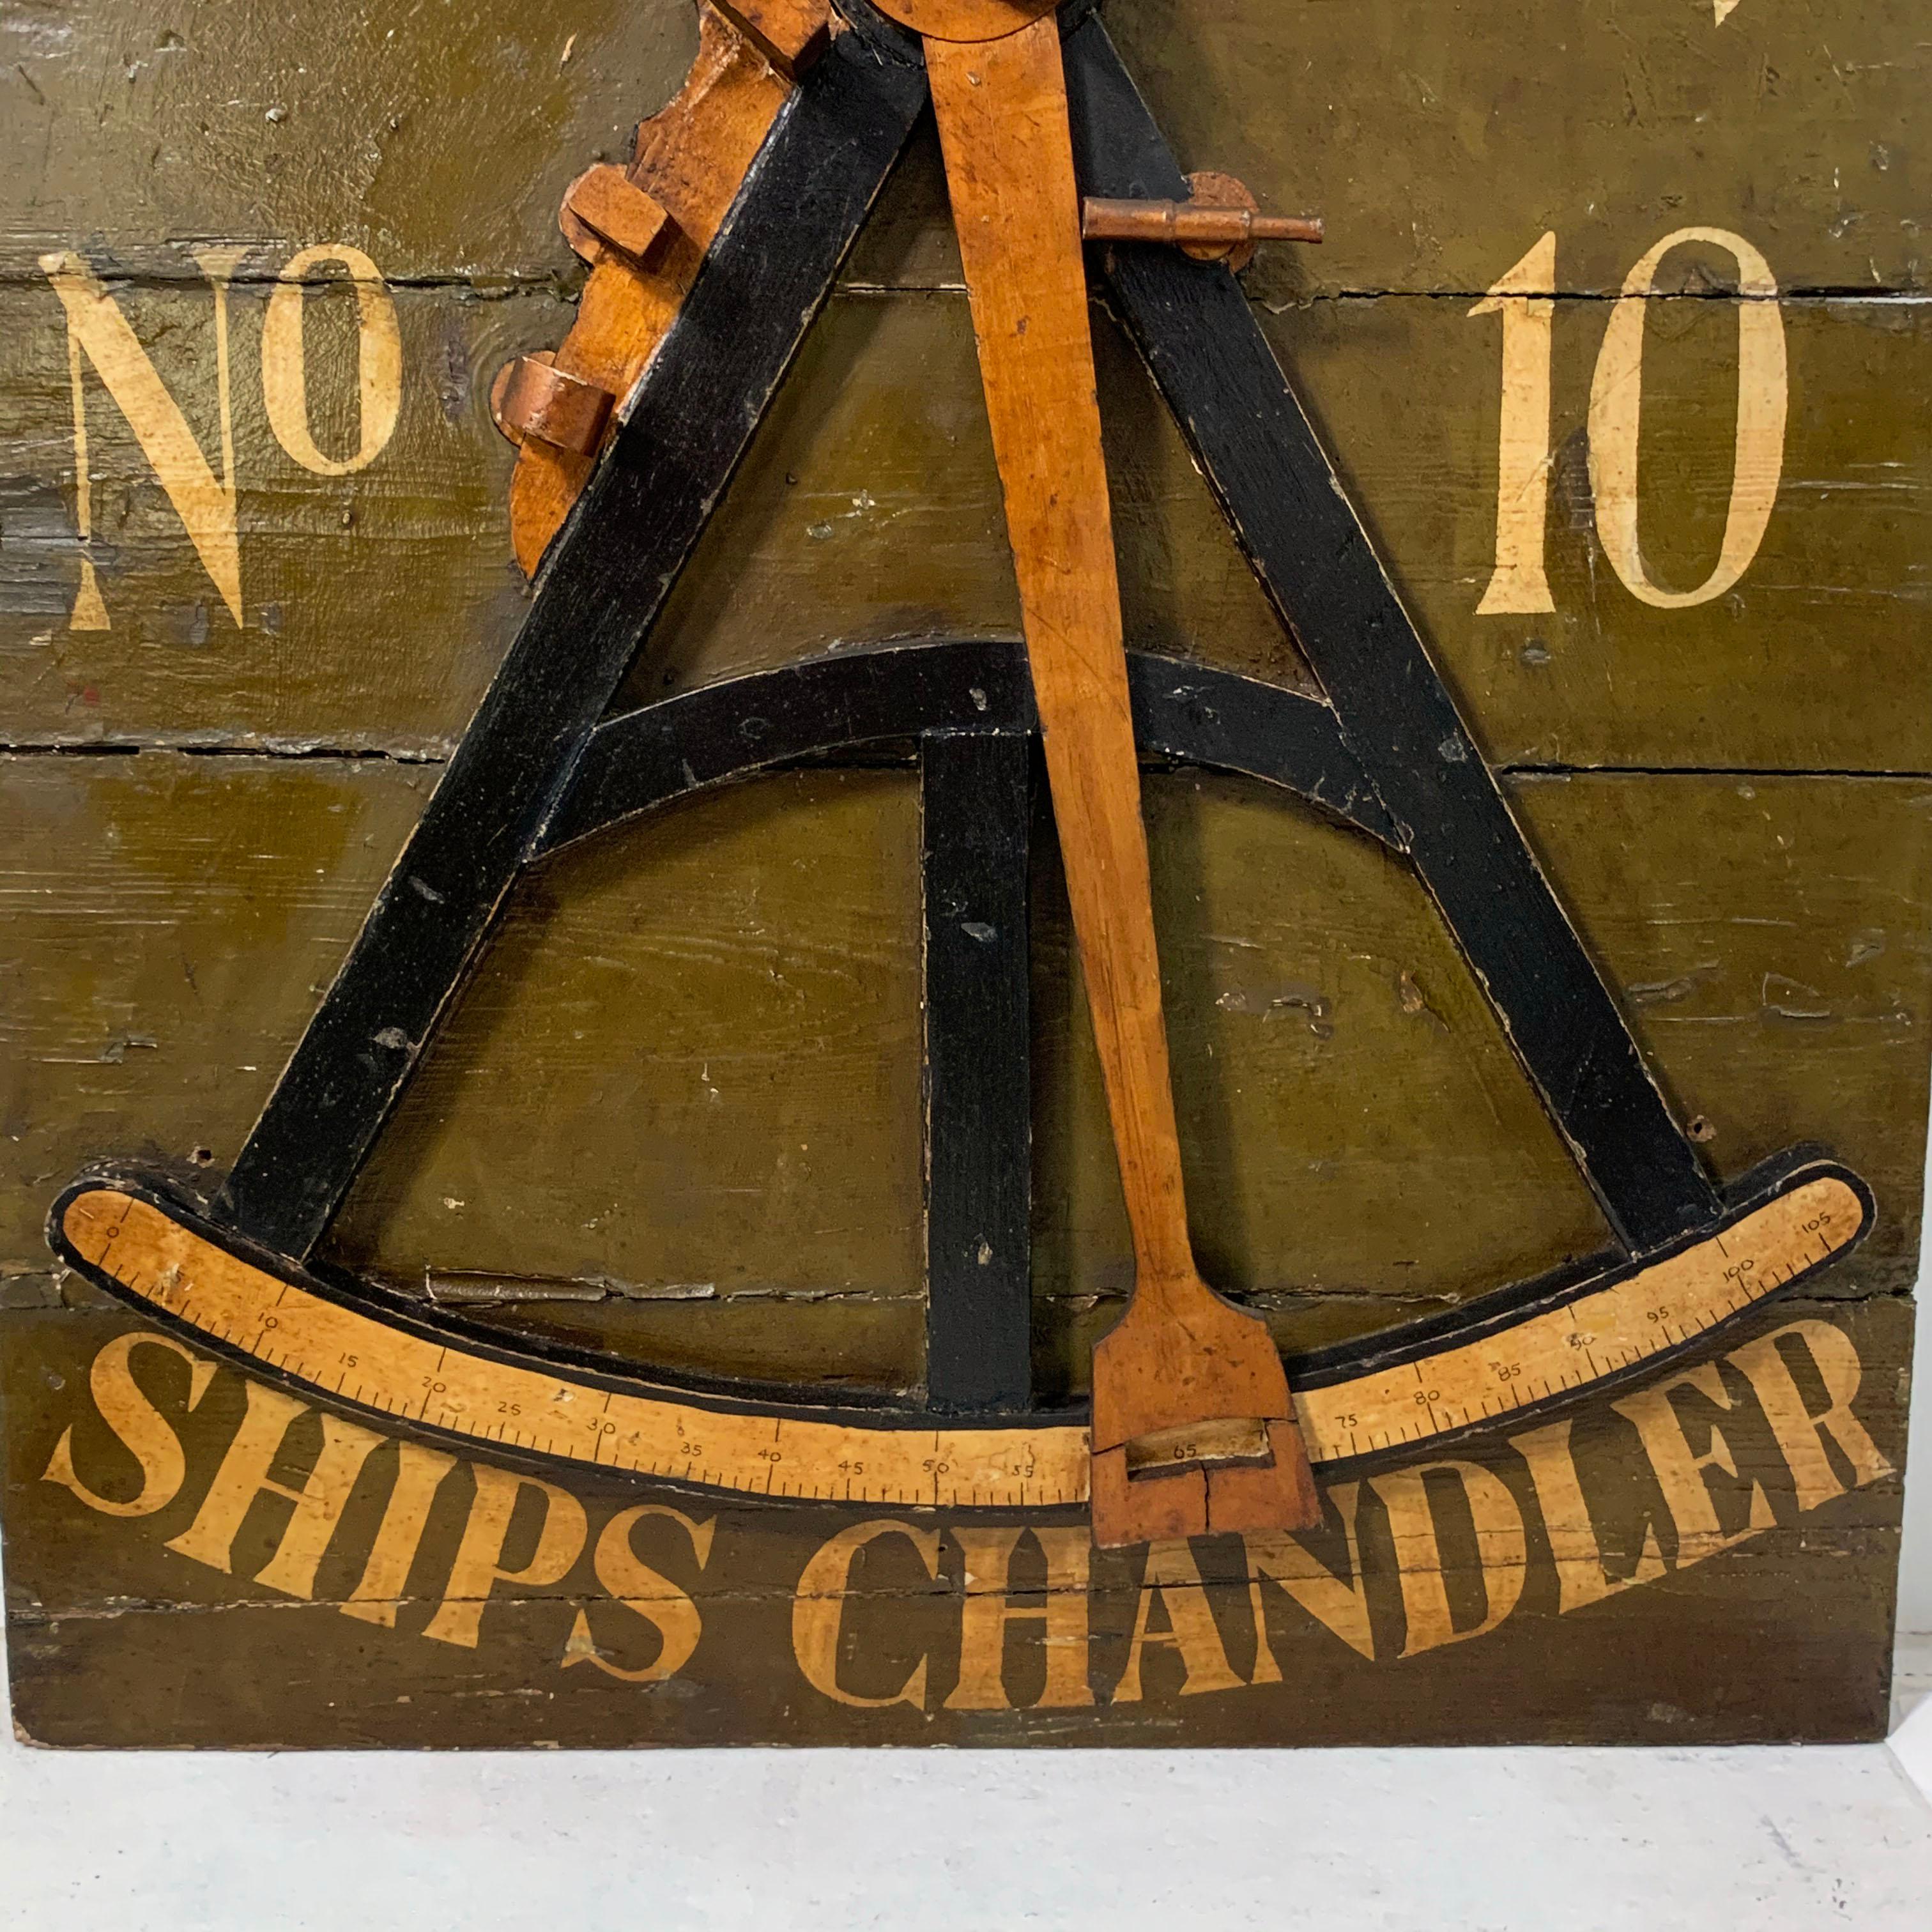 Ein Relikt aus Bostons Handelsgeschichte und der Seefahrt. Dieses Ladenschild aus dem 19. Jahrhundert zeigt eine ziemlich detaillierte Nachbildung eines Navigationsoktanten (oder Sextanten) sowie den Namen des Inhabers und die Hausnummer. Für einen